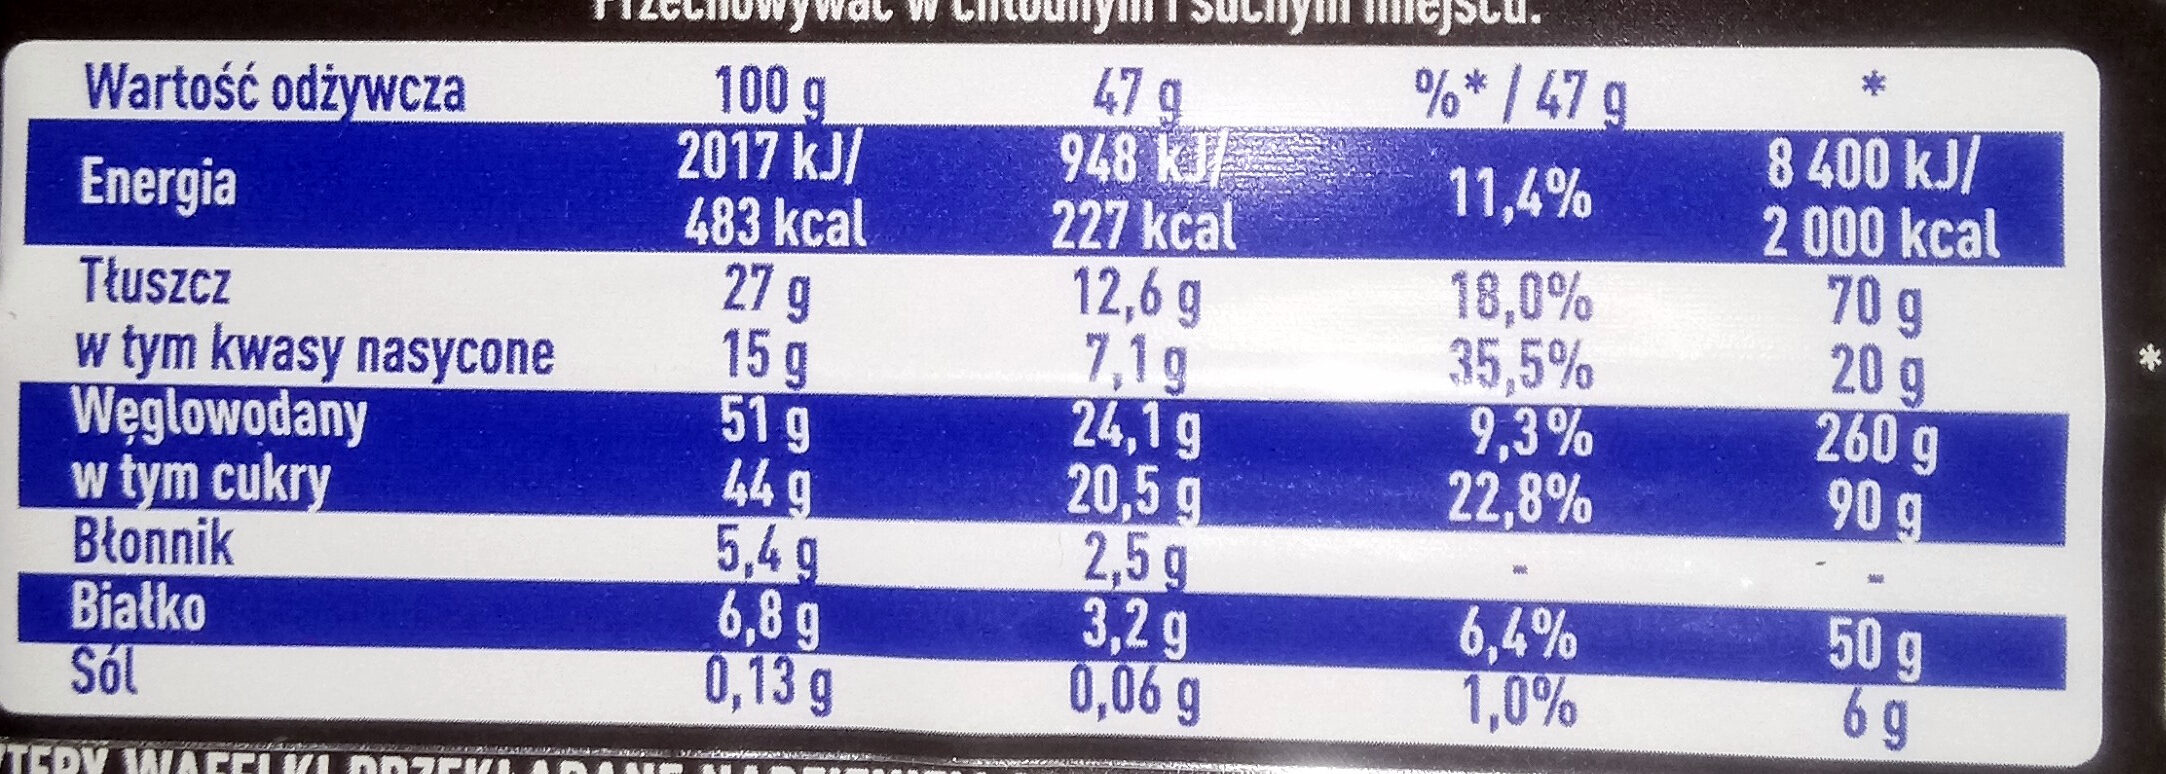 WW gorzka czekolada - Nutrition facts - pl